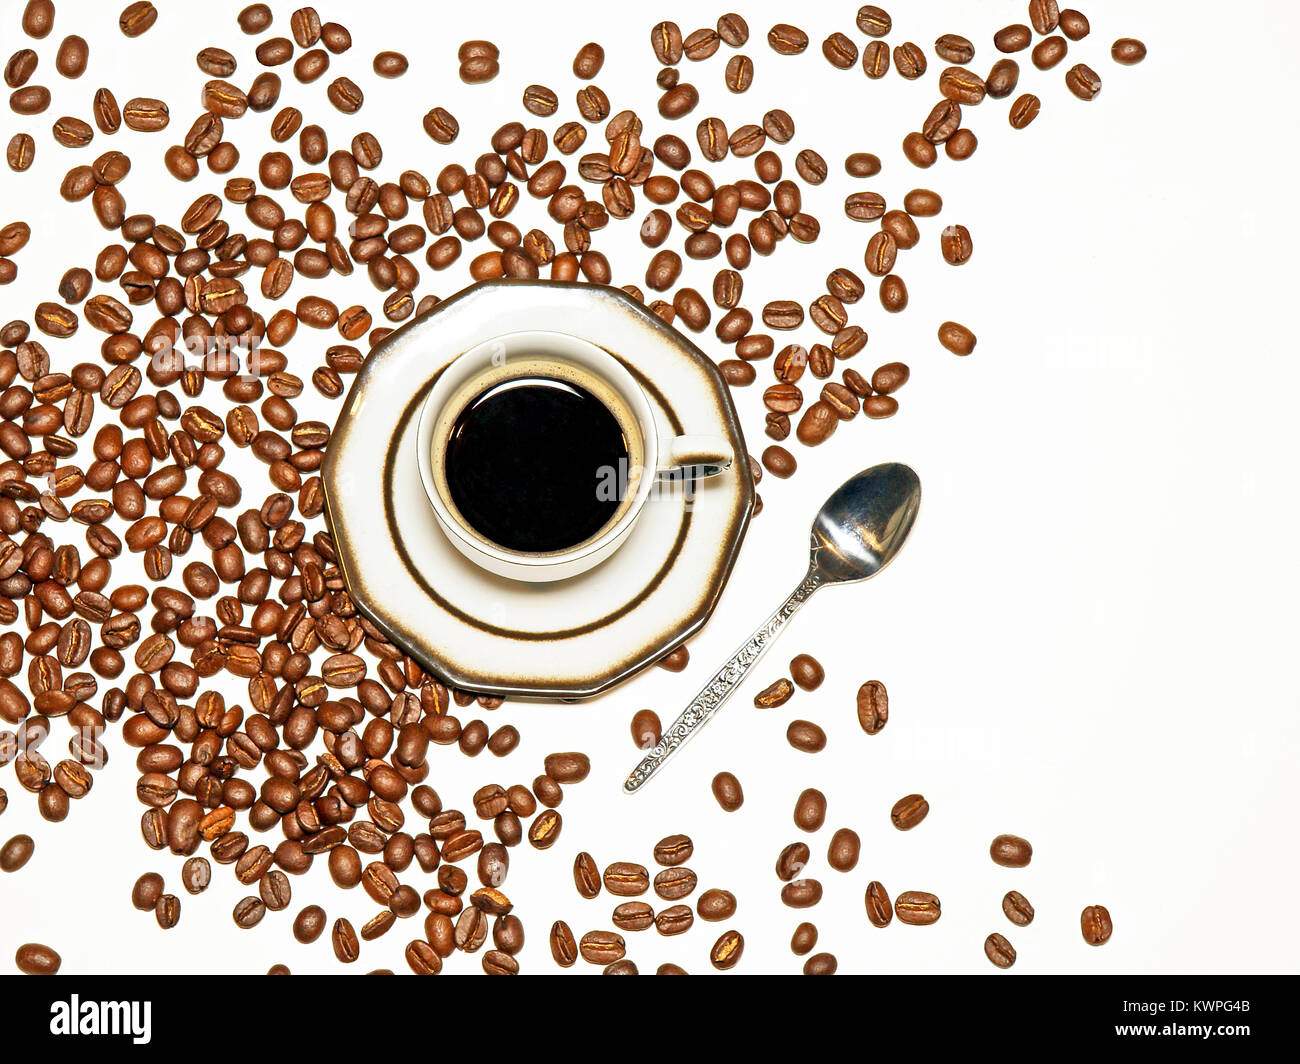 Tazza di caffè espresso su sfondo bianco con i chicchi di caffè sparsi, con spazio libero a destra sul lato dell'immagine. Foto Stock